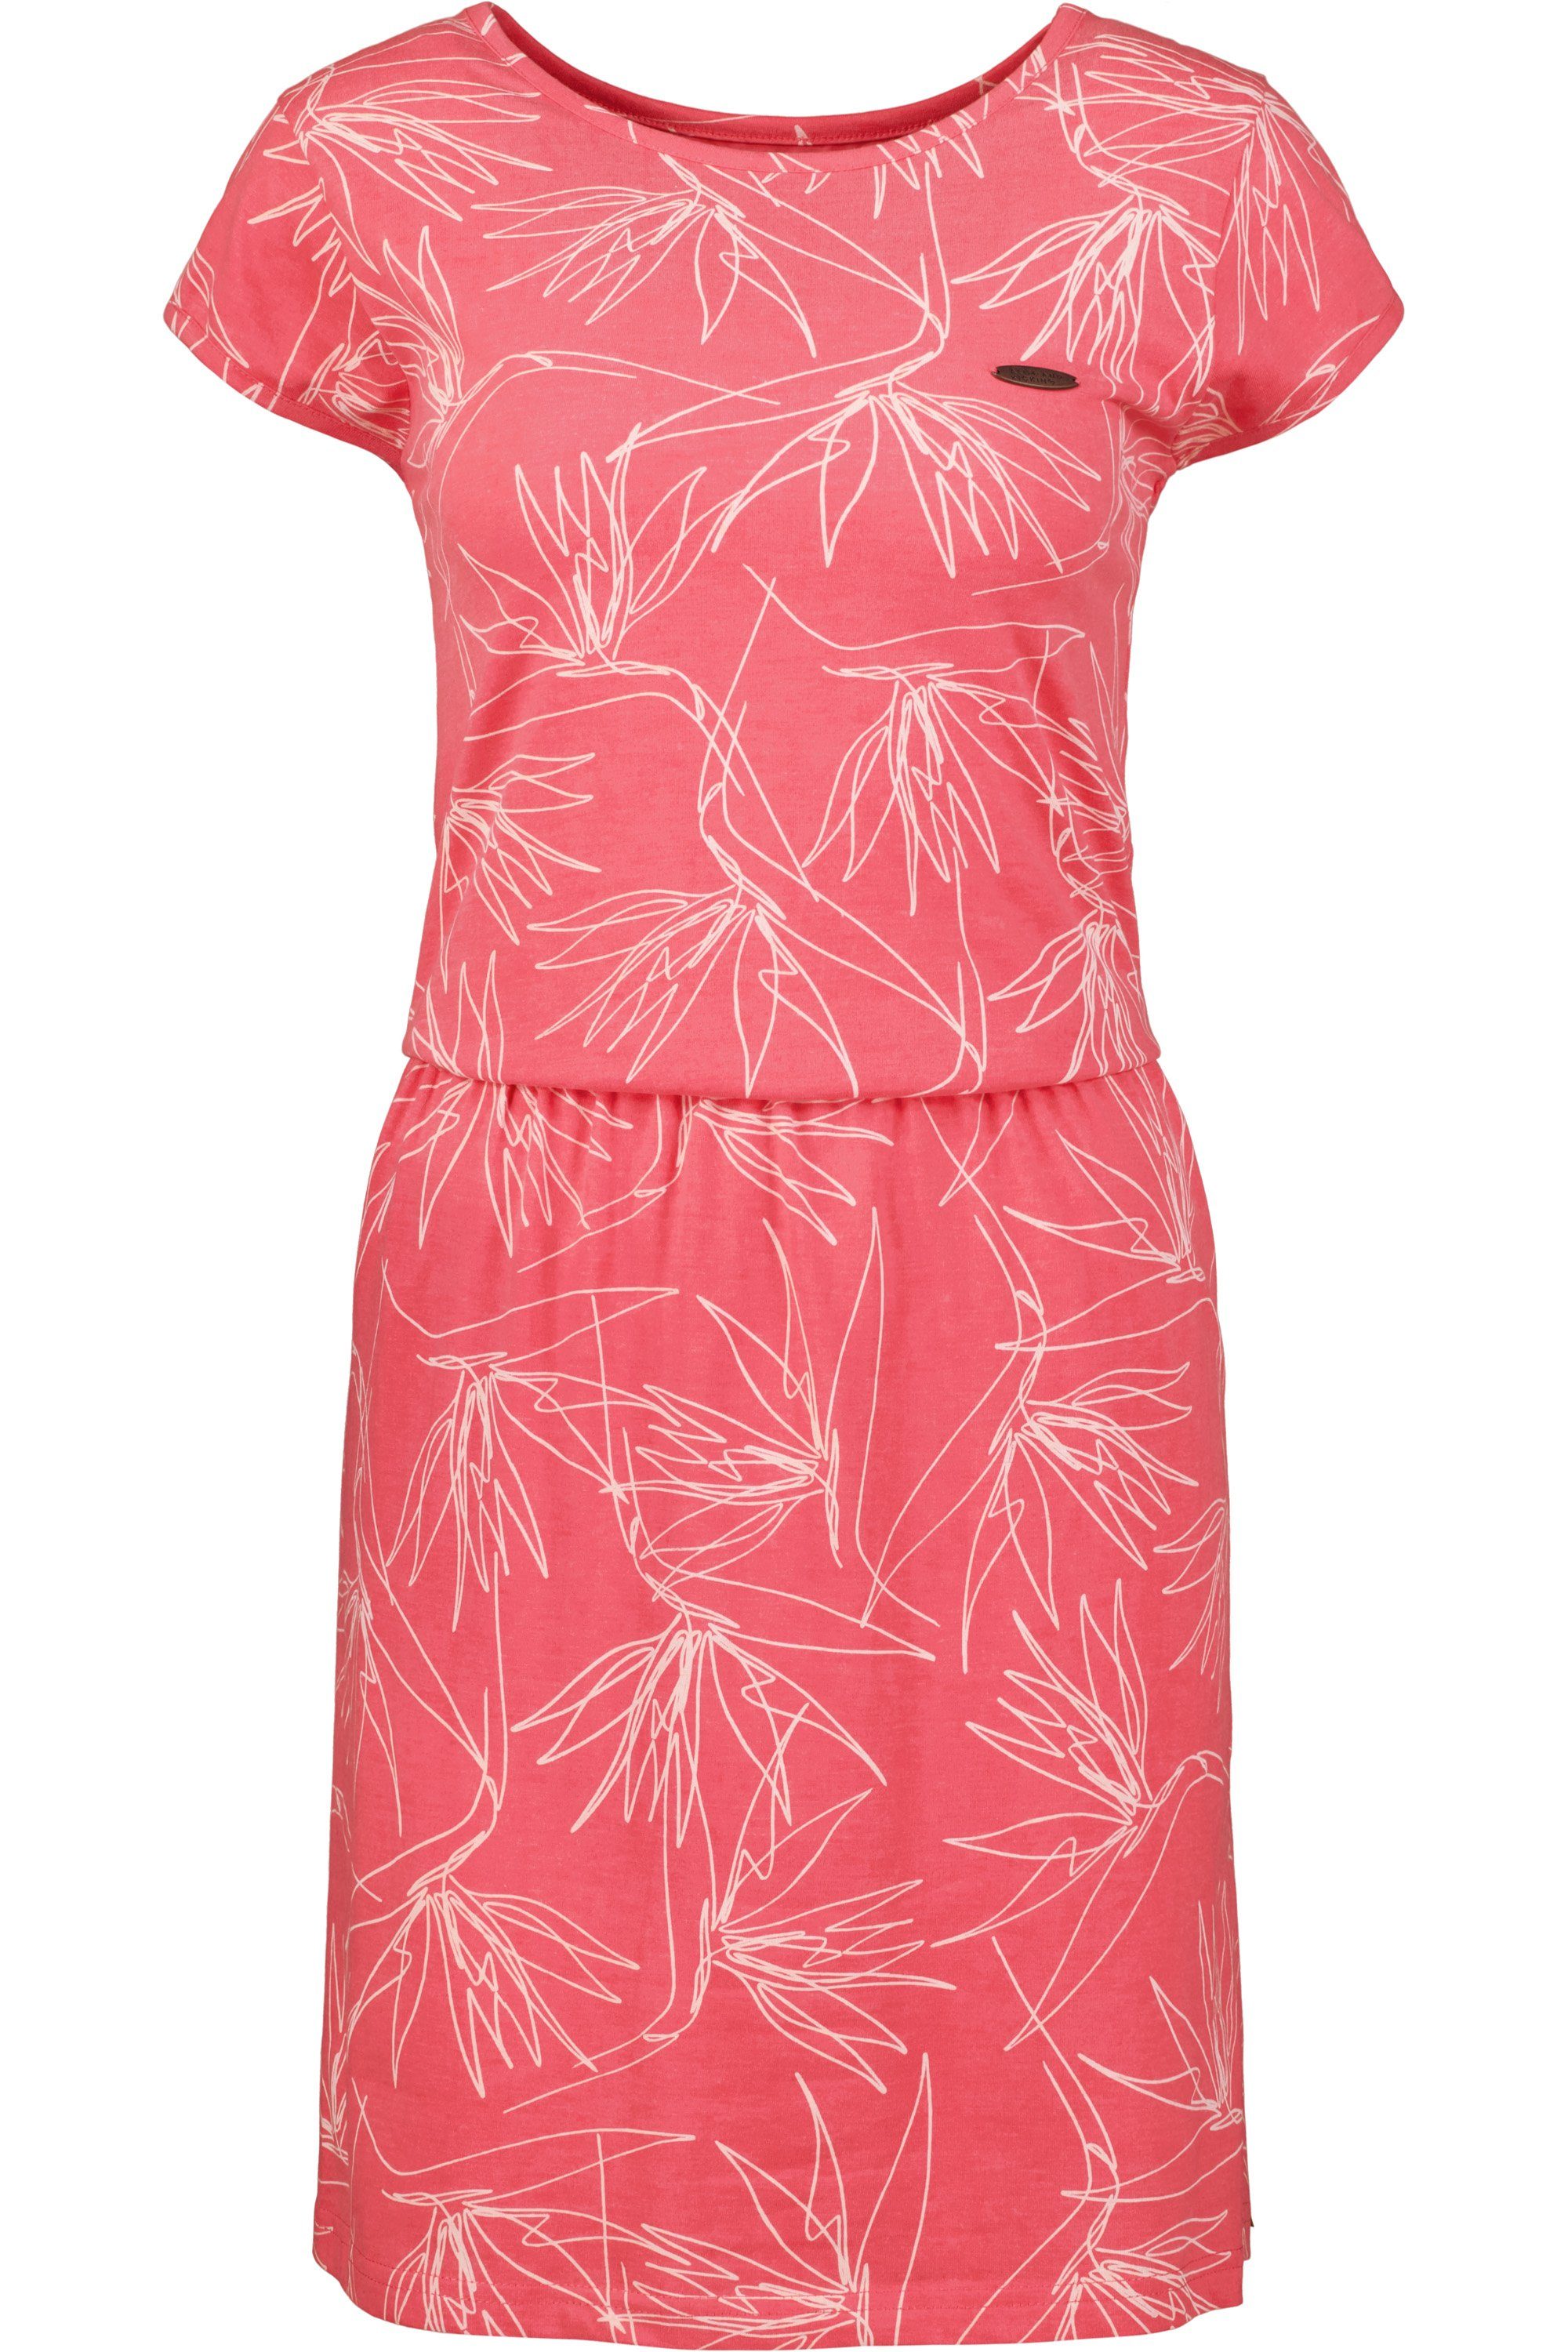 Alife & Kickin Sommerkleid ShannaAK Shirt Kleid coral B Sommerkleid, Damen melange Dress